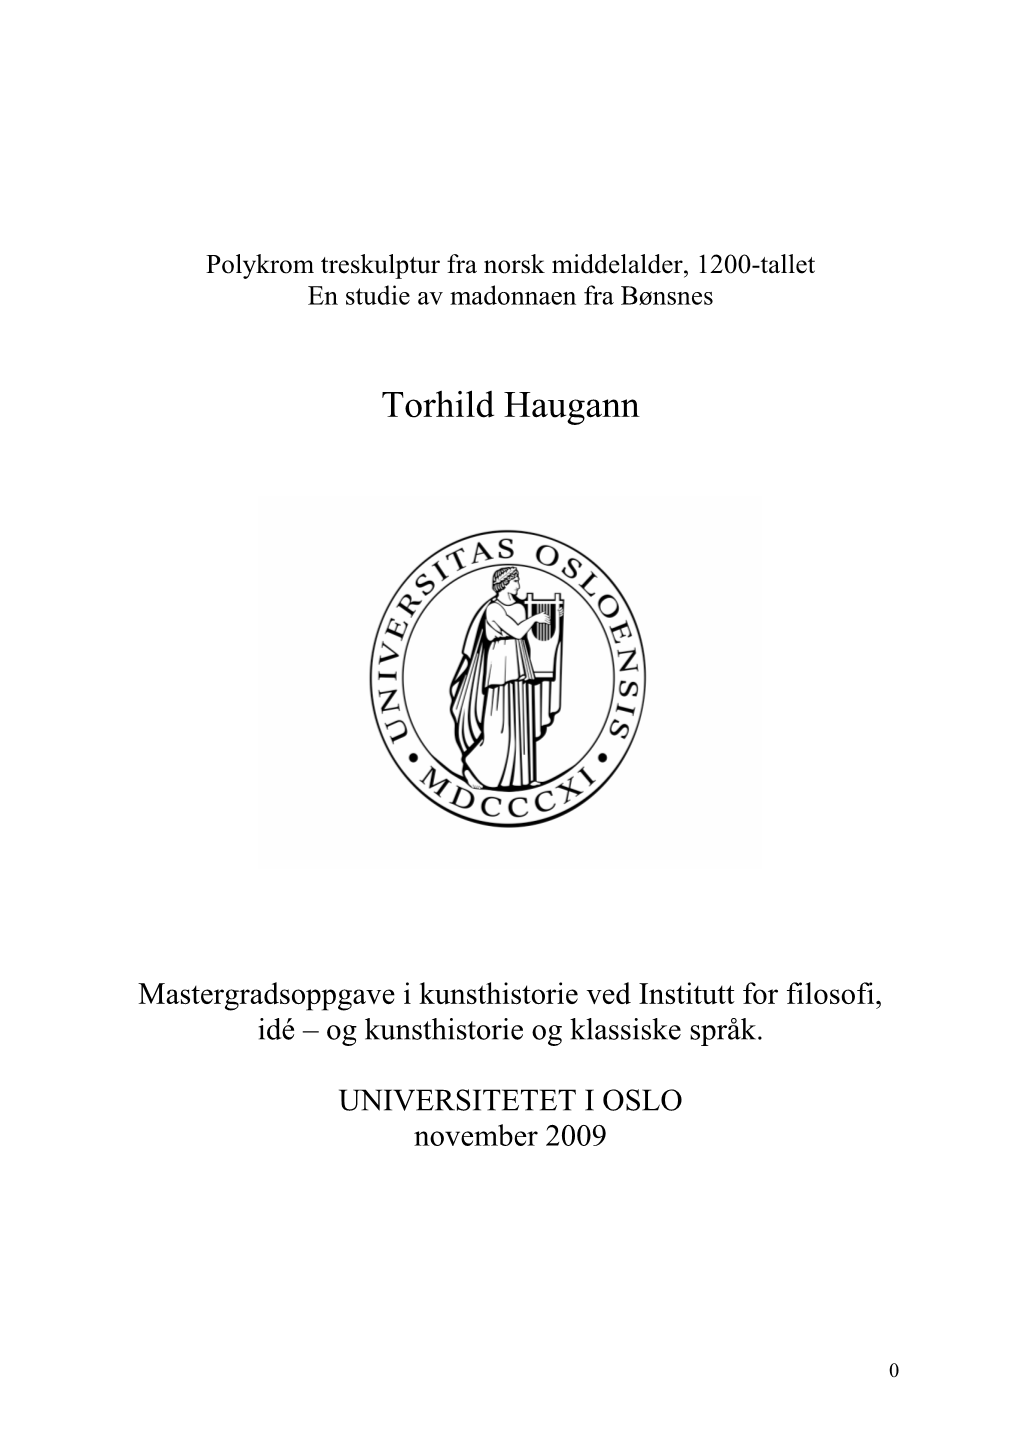 Norsk Middelalders Bemalte Treskulpturer Fra Perioden 1150-1350